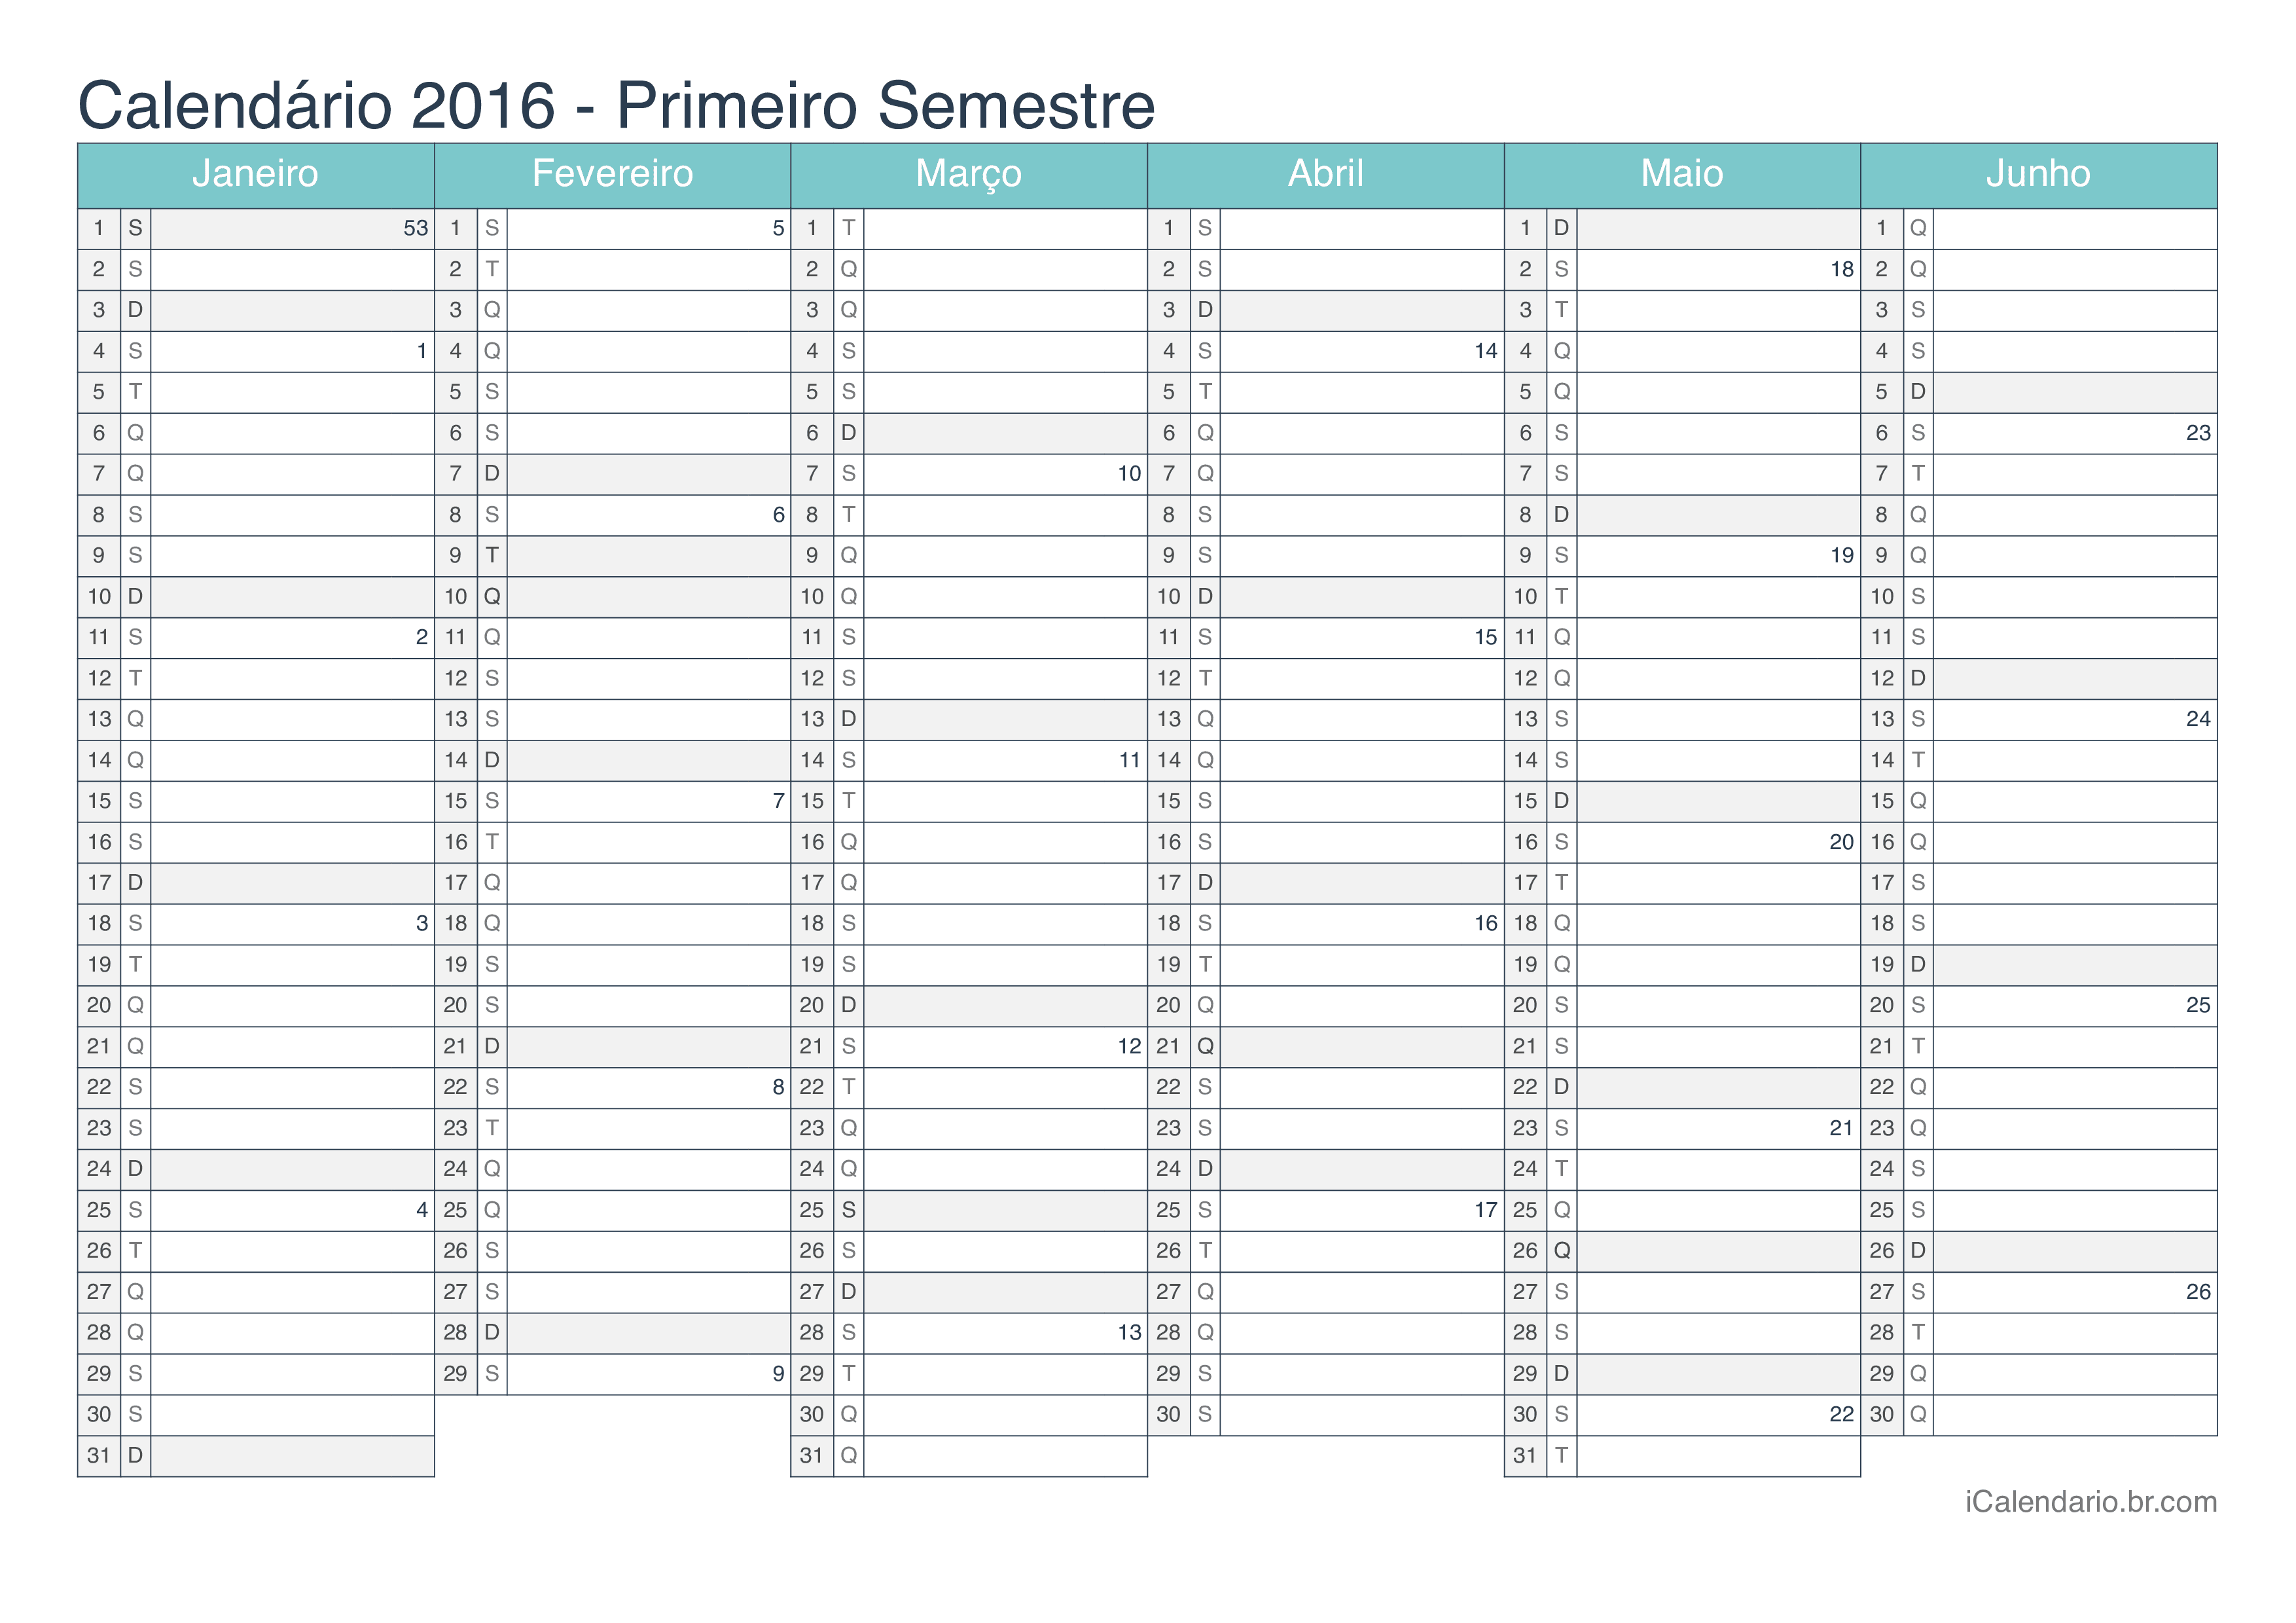 Calendário por semestre com números da semana 2016 - Turquesa